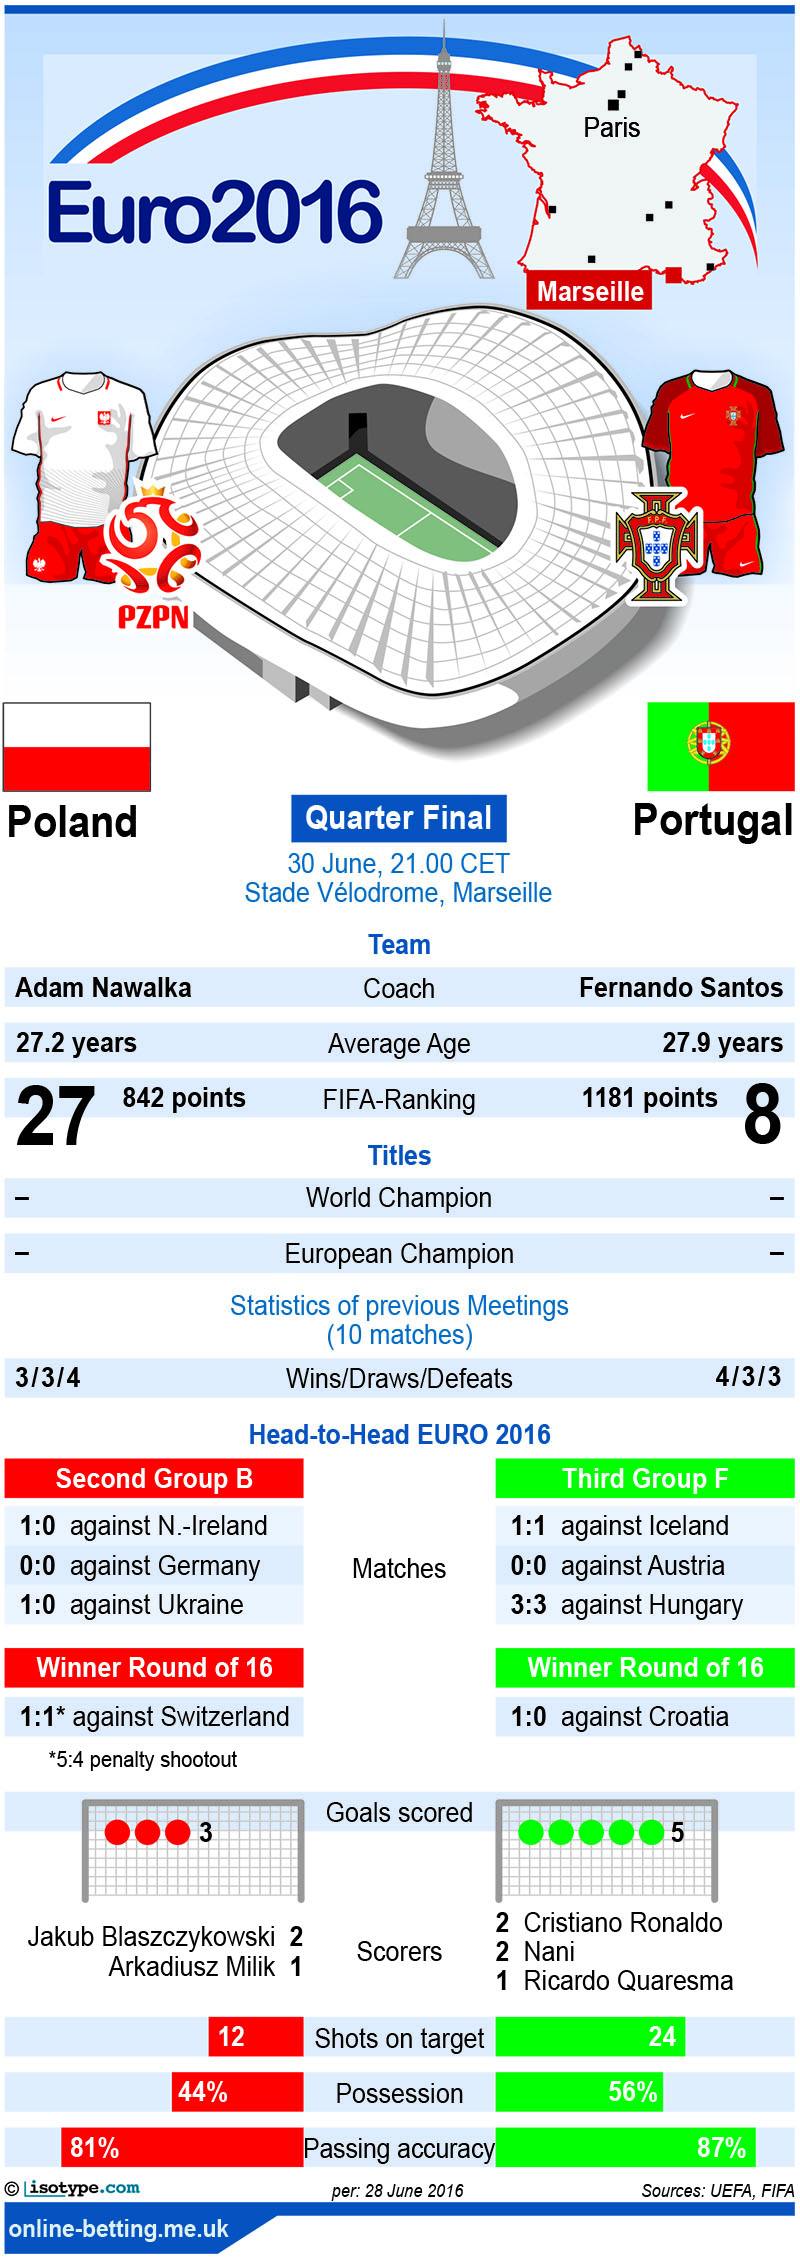 Poland v Portugal Euro 2016 Infographic